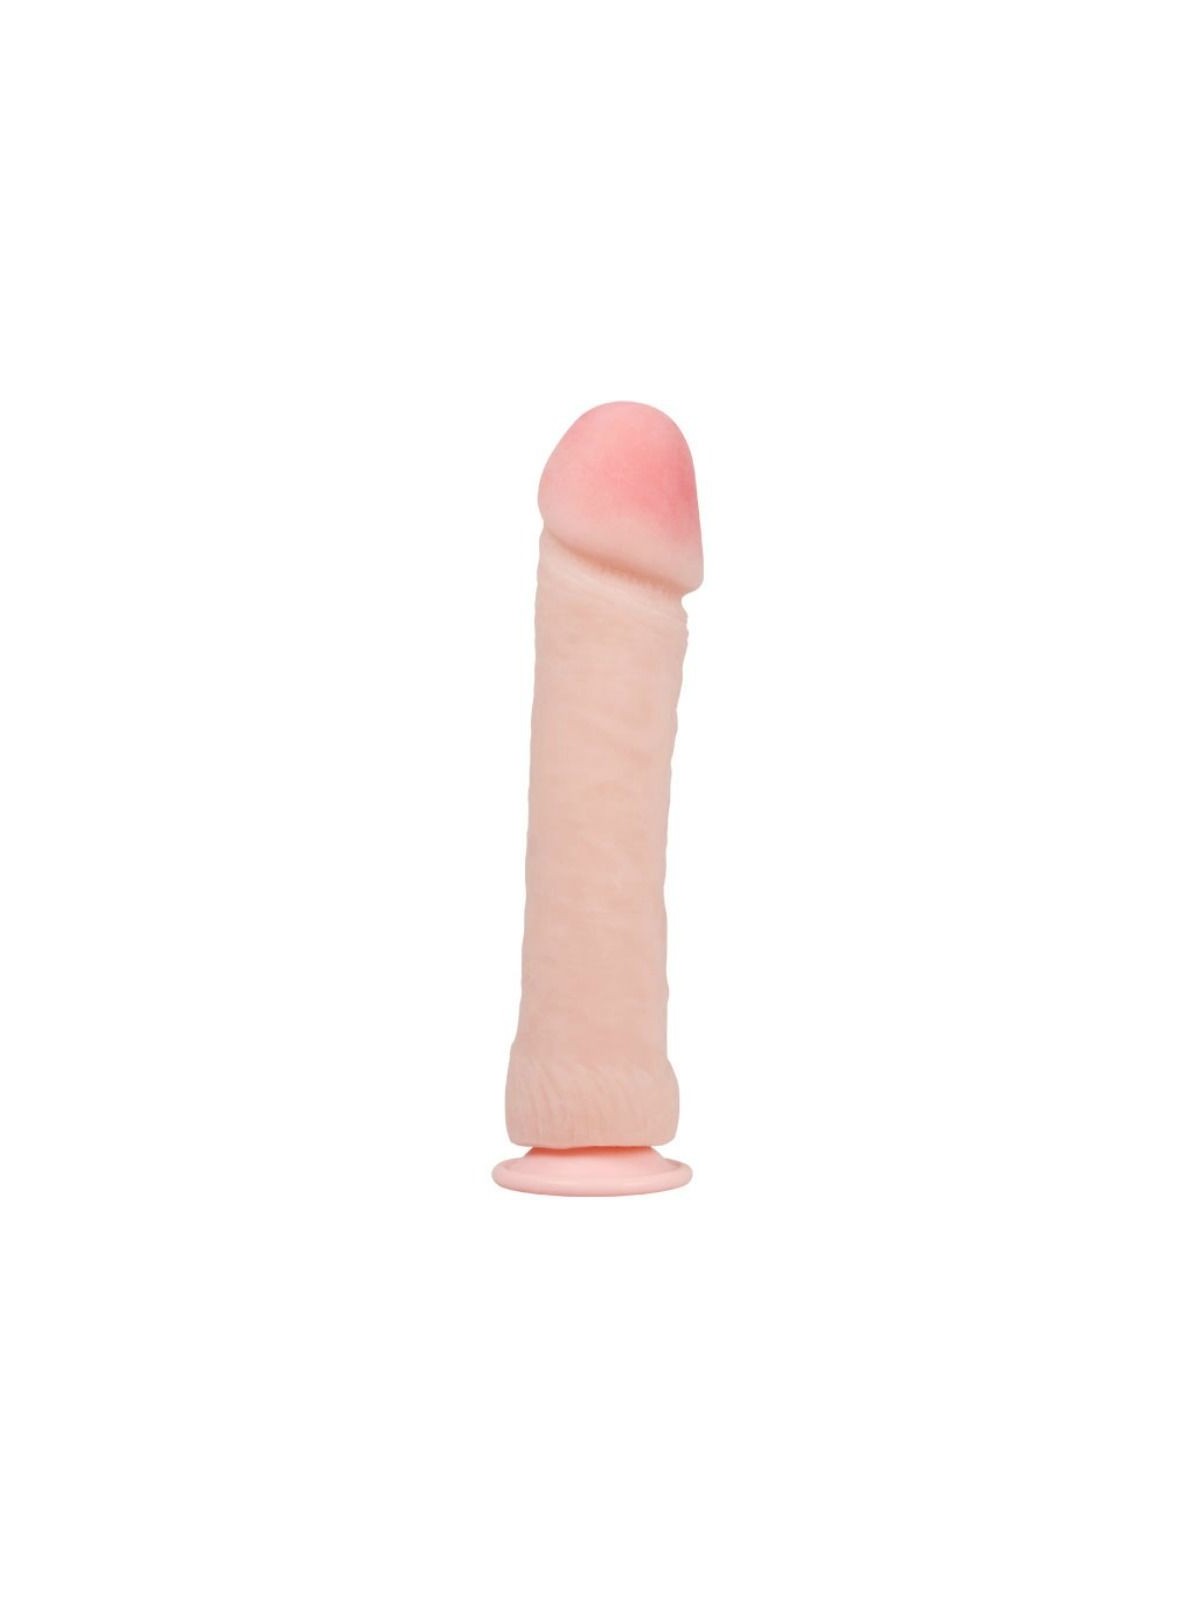 The Big Penis Dildo Realístico Natural 26 cm - Comprar Dildo gigante Baile - Penes realistas (1)